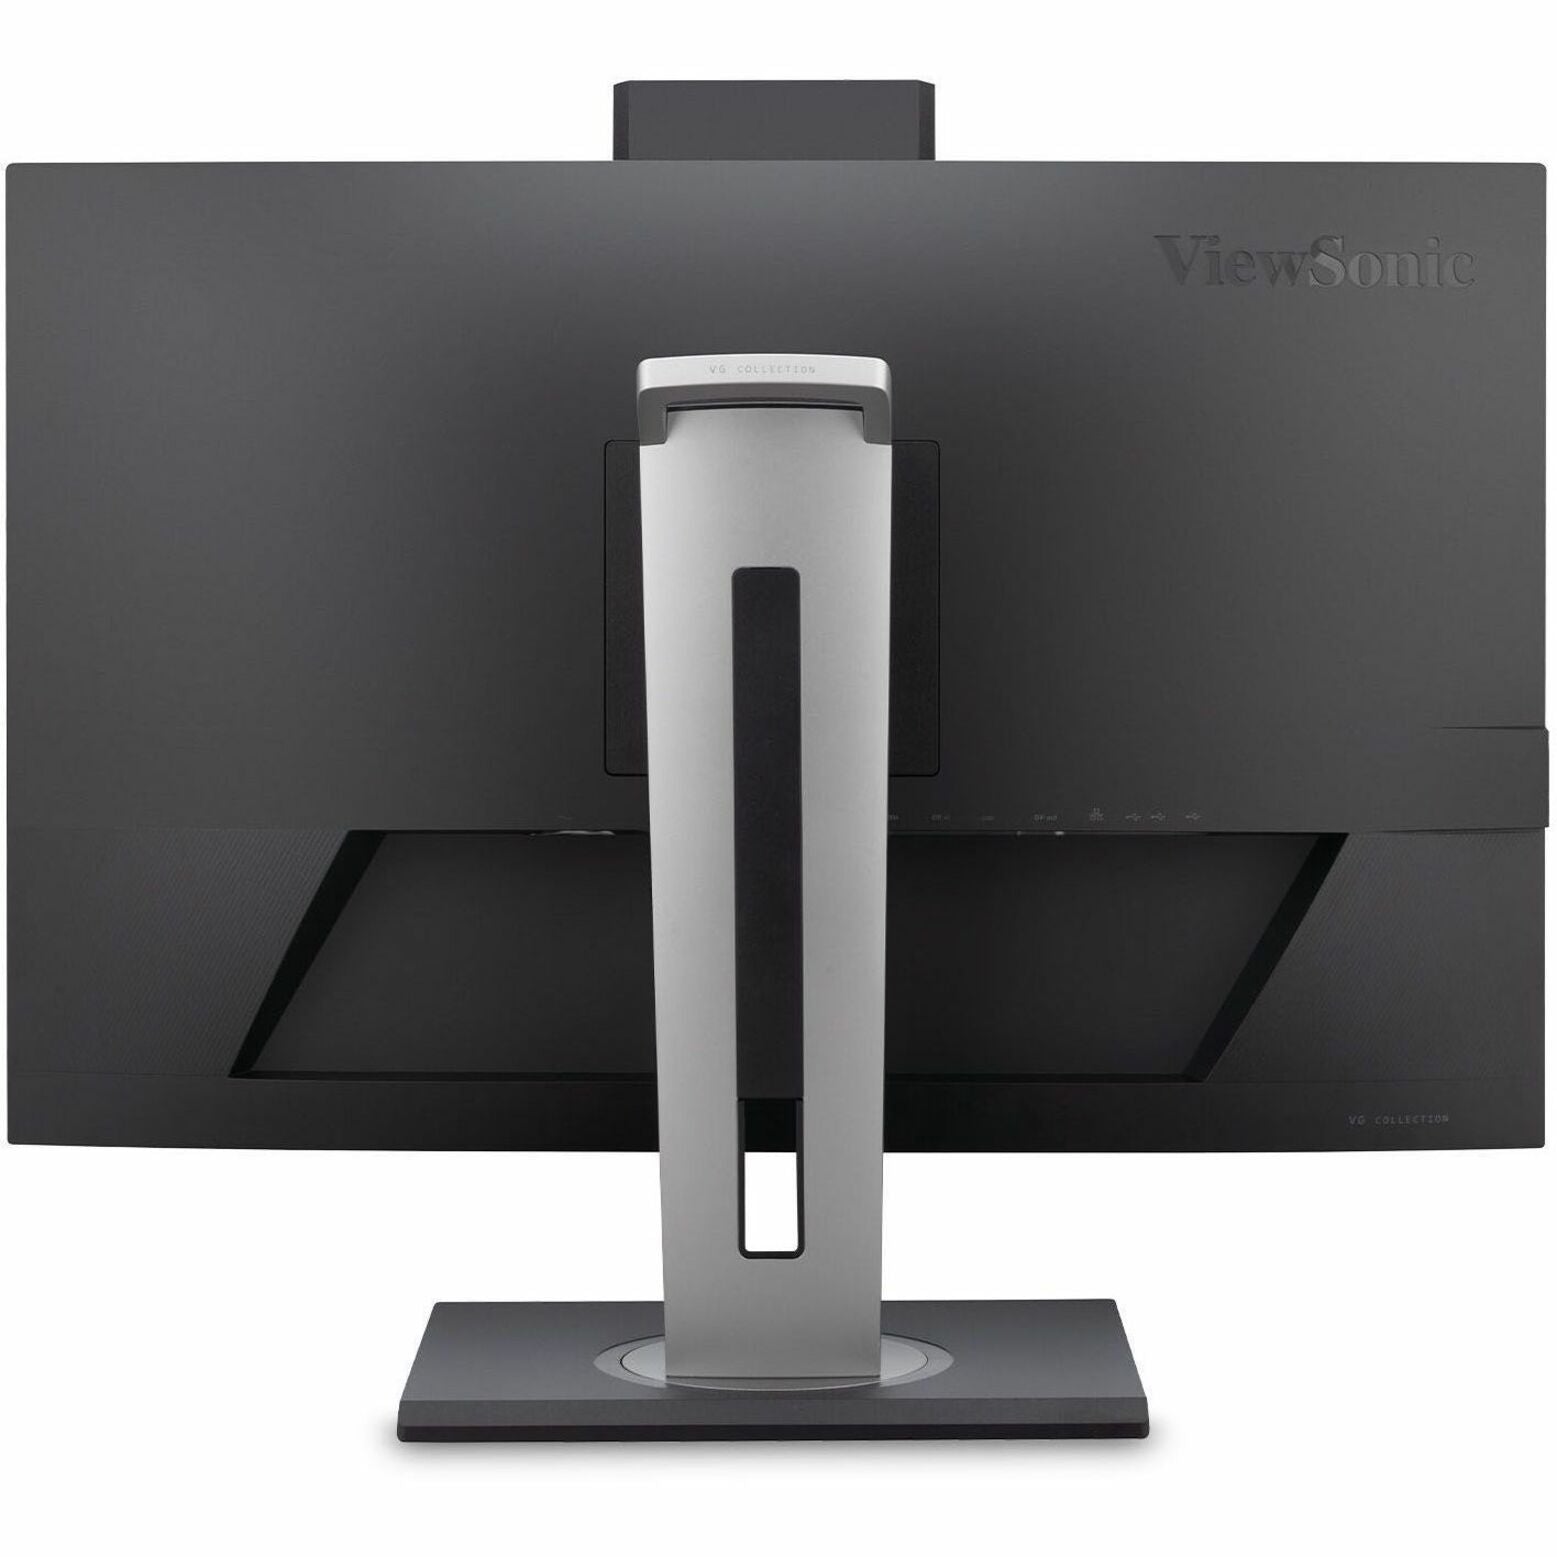 Monitor de Videoconferencia ViewSonic de 27 pulgadas y resolución 1440P con cámara web compatible con Windows Hello IR 9 (VG2757V-2K)